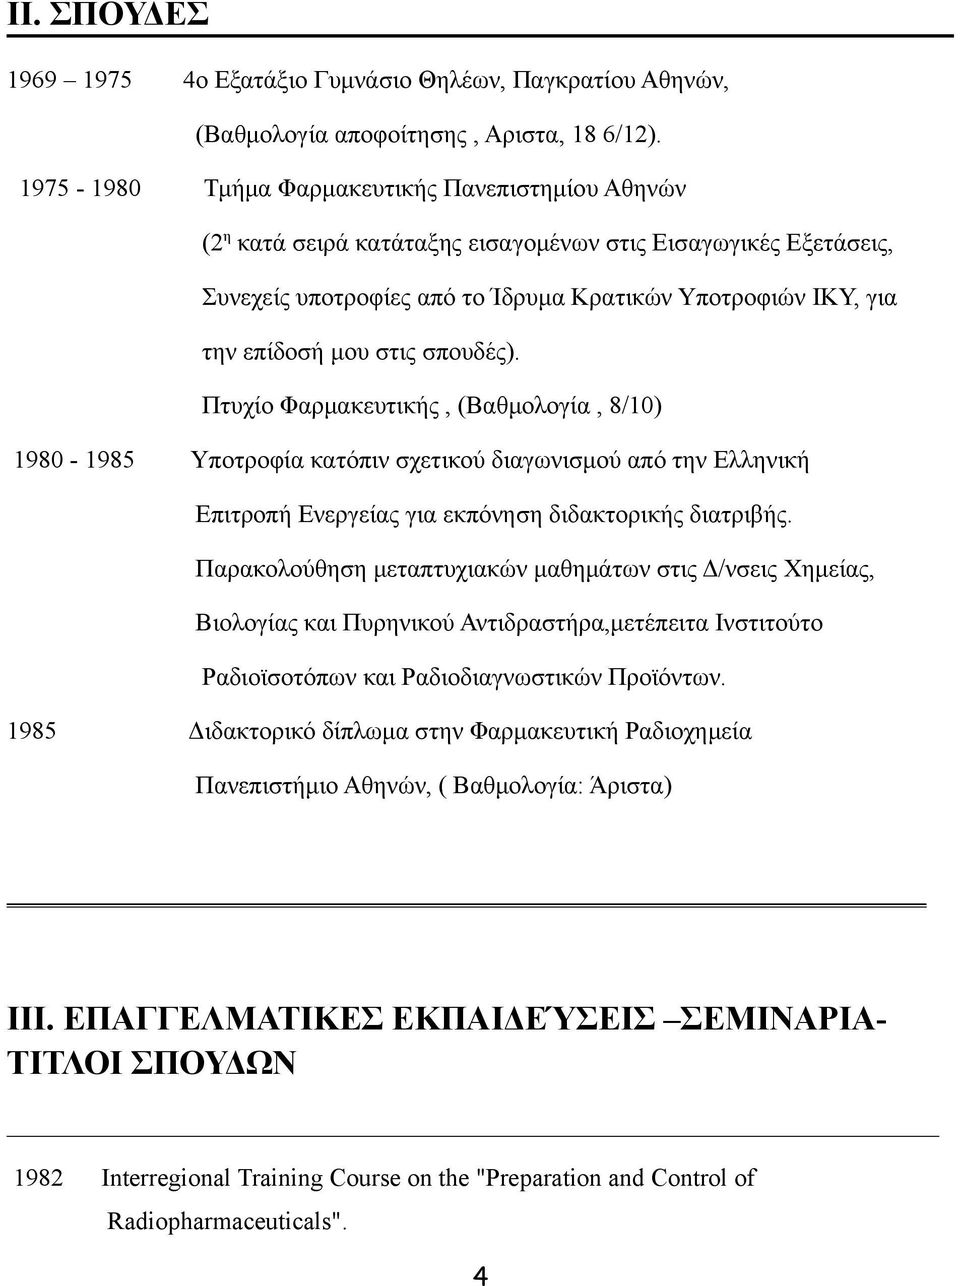 στις σπουδές). Πτυχίο Φαρμακευτικής, (Βαθμολογία, 8/10) 1980-1985 Υποτροφία κατόπιν σχετικού διαγωνισμού από την Ελληνική Επιτροπή Ενεργείας για εκπόνηση διδακτορικής διατριβής.